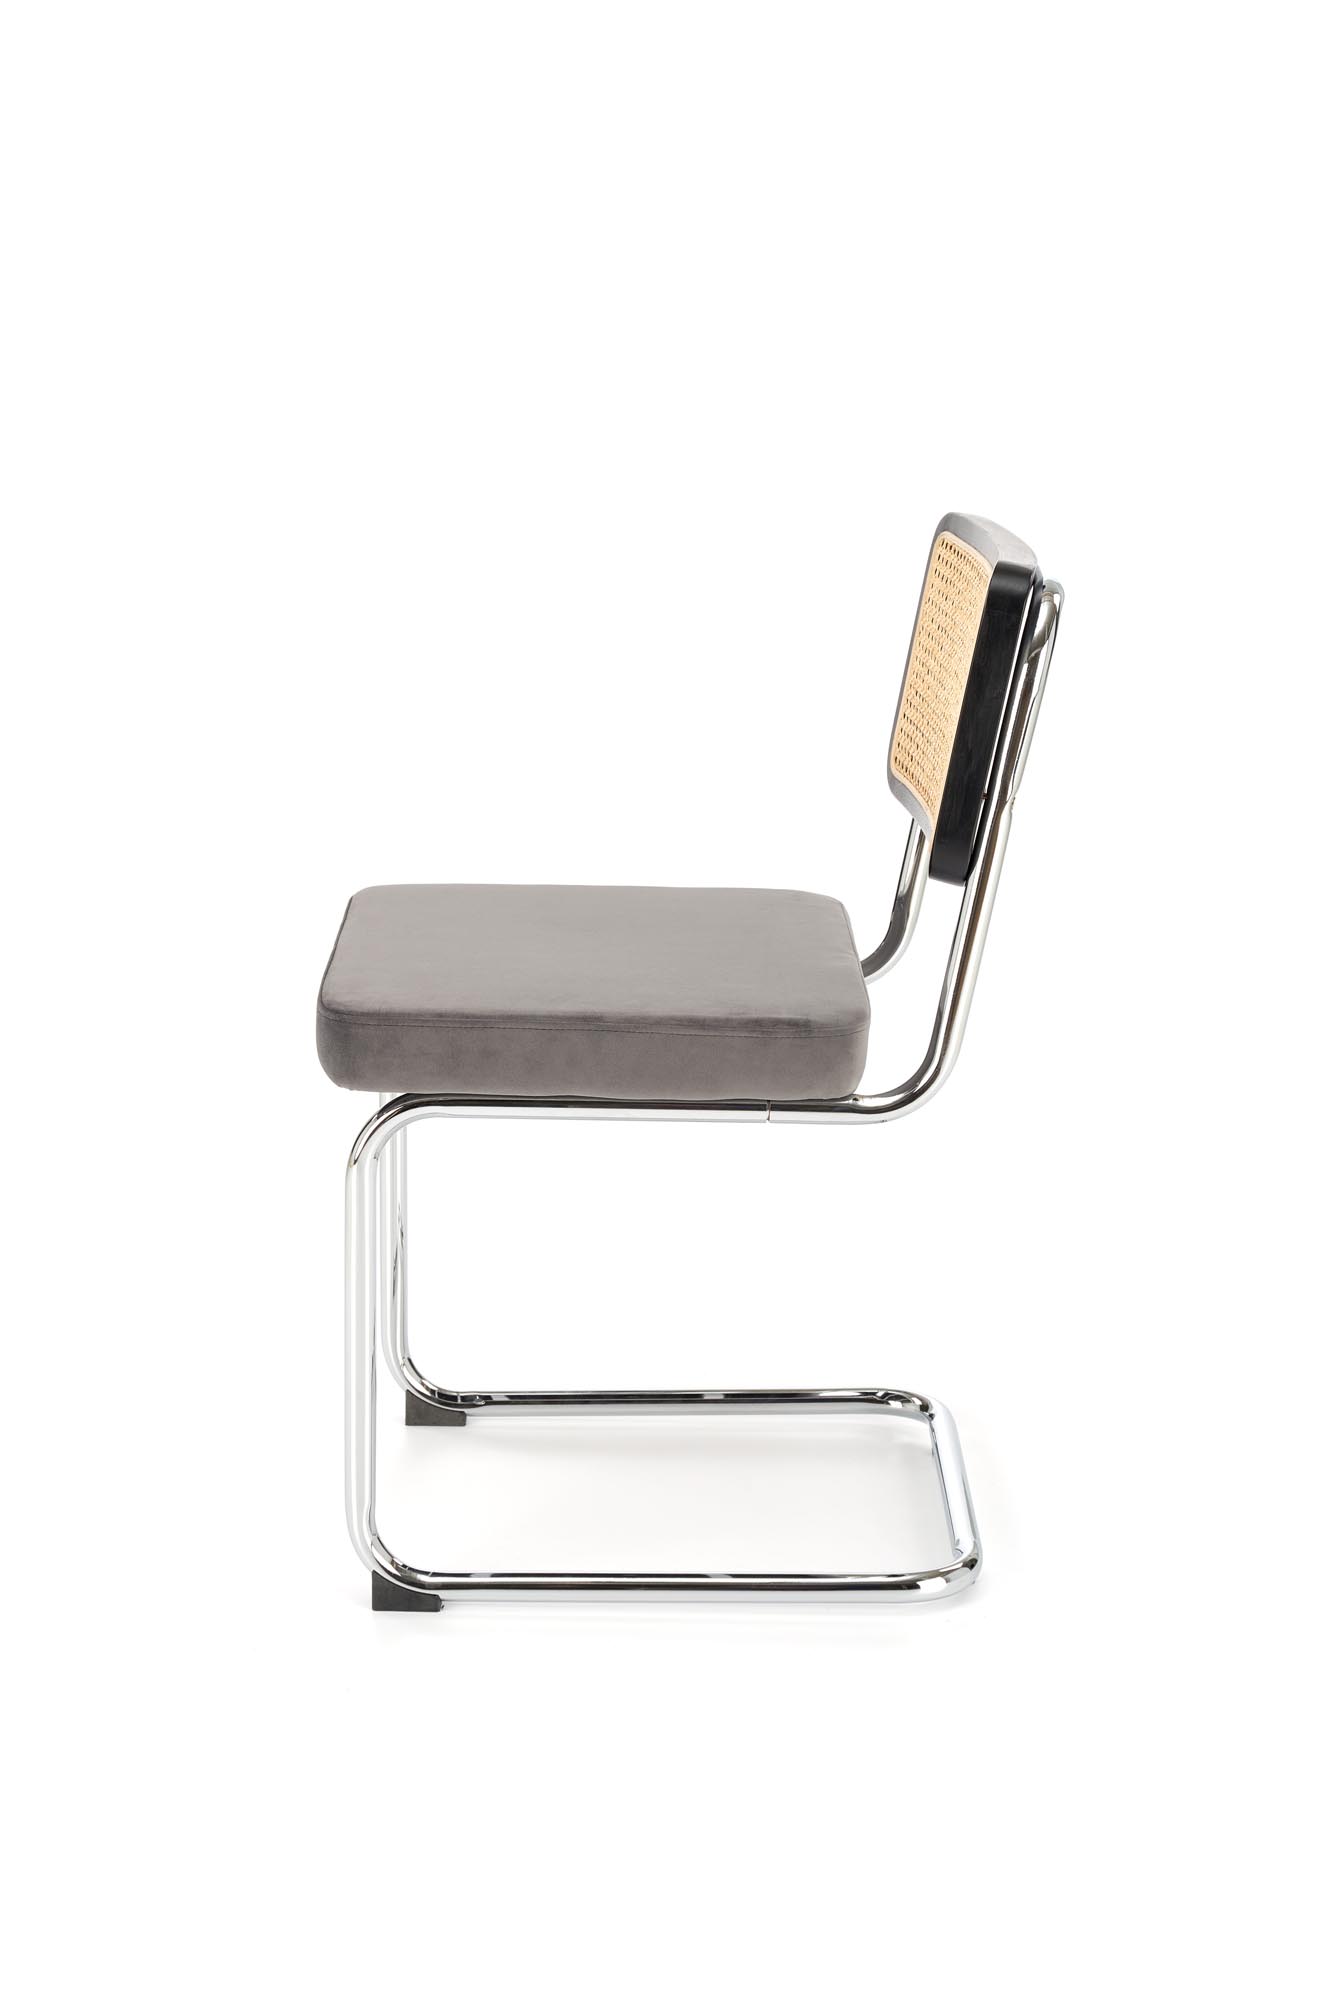 K504 Židle Popelový / Černý židle ocelové s čalouněným sedákem k504 - Popelový / Černý